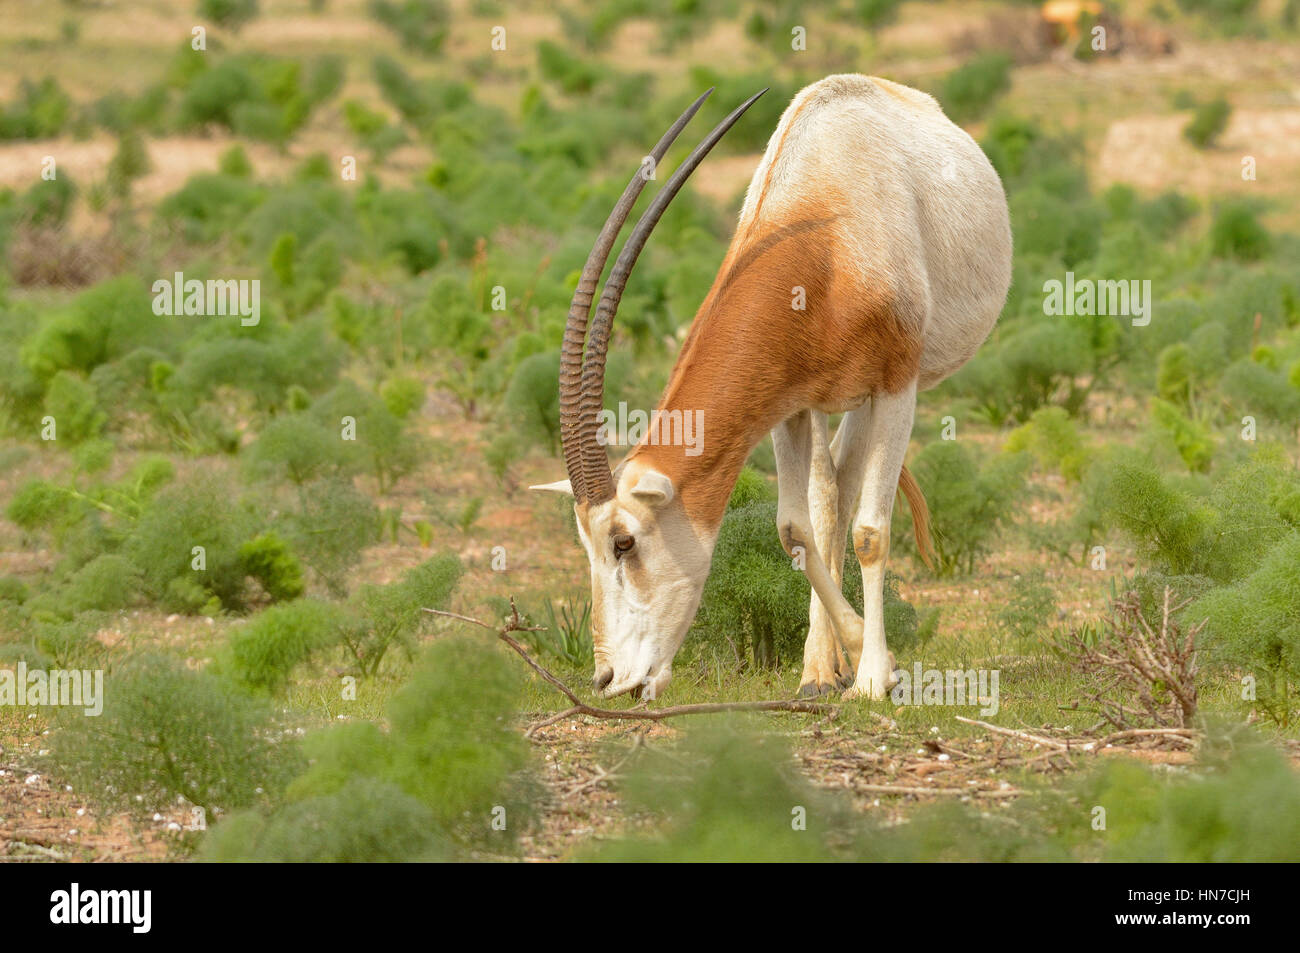 Orix cimitarra Oryx dammah extinguida en la naturaleza estos animales mantenidos en recintos enormes recursos naturales en el Parque Nacional Souss Massa, Marruecos Foto de stock